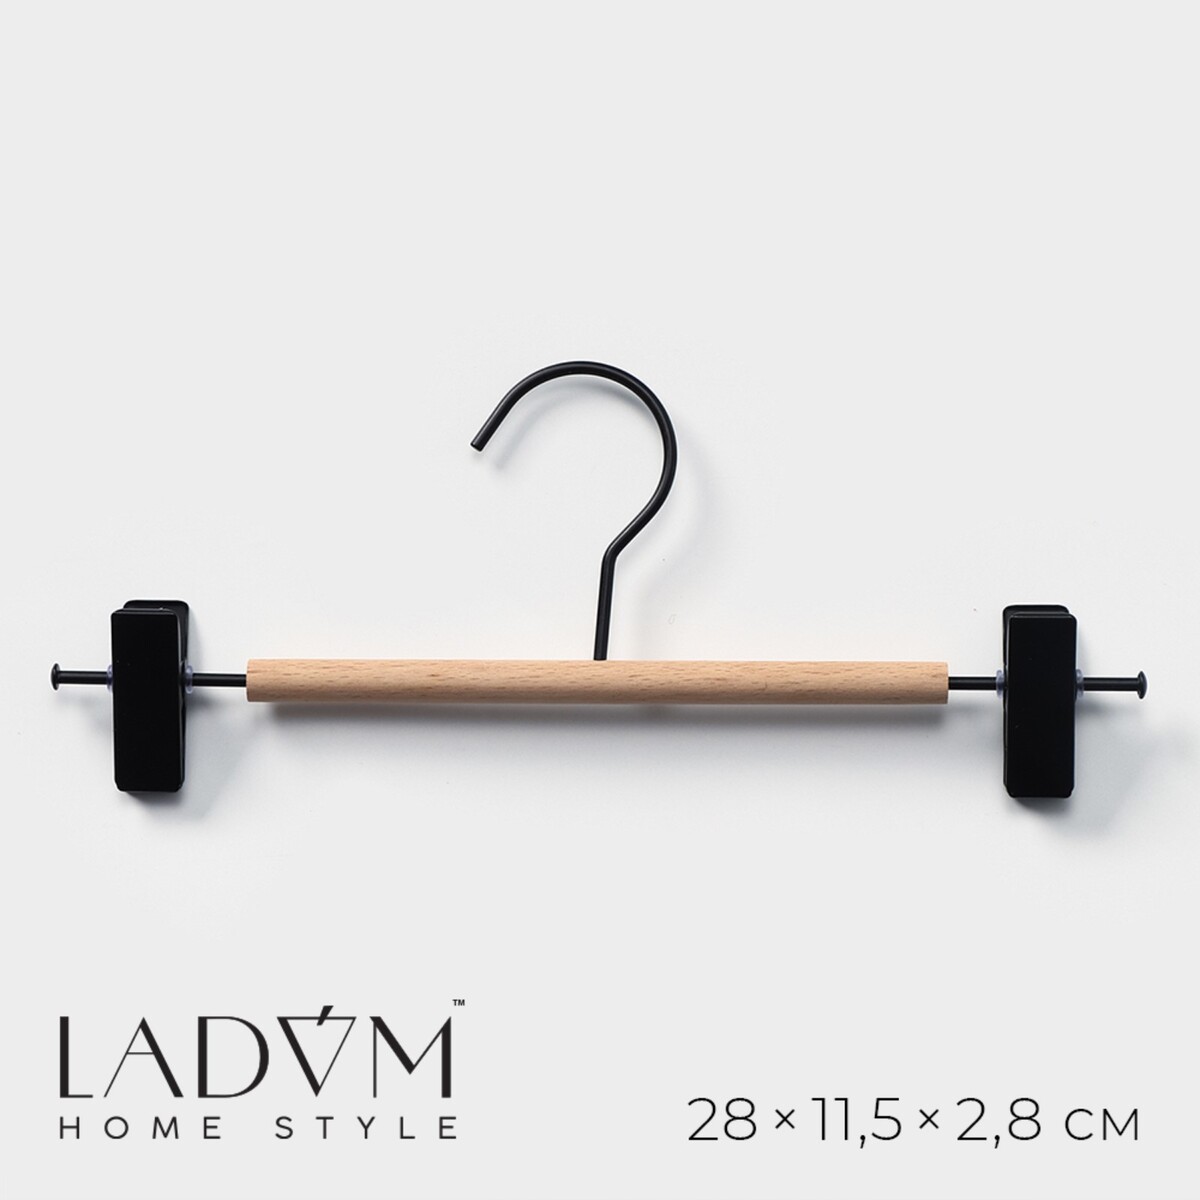 Вешалка для брюк и юбок с зажимами ladо́m laconique, 28×11,5×2,8 см, цвет черный вешалка органайзер для ремней и шарфов многоуровневая ladо́m laconique 11 3×24×1 1 см белый